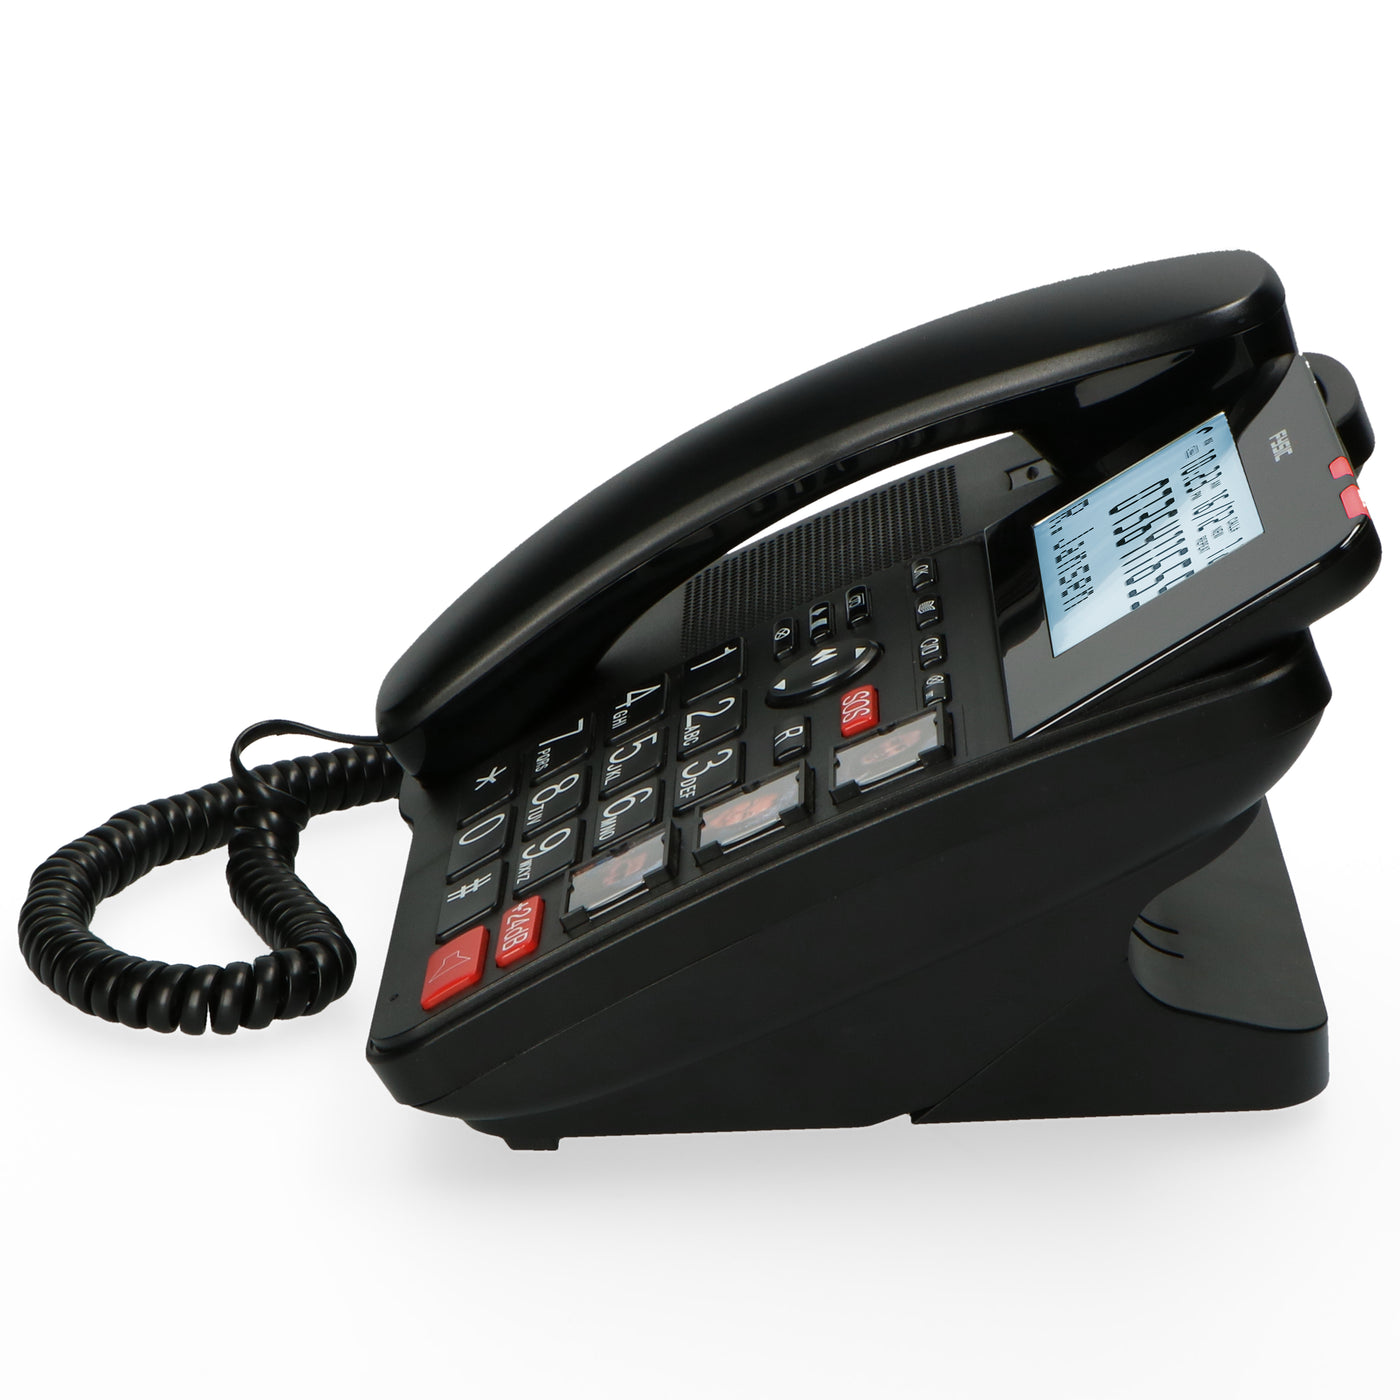 Fysic FX-8025 - Vaste telefoon met antwoordapparaat en DECT telefoon voor senioren, zwart